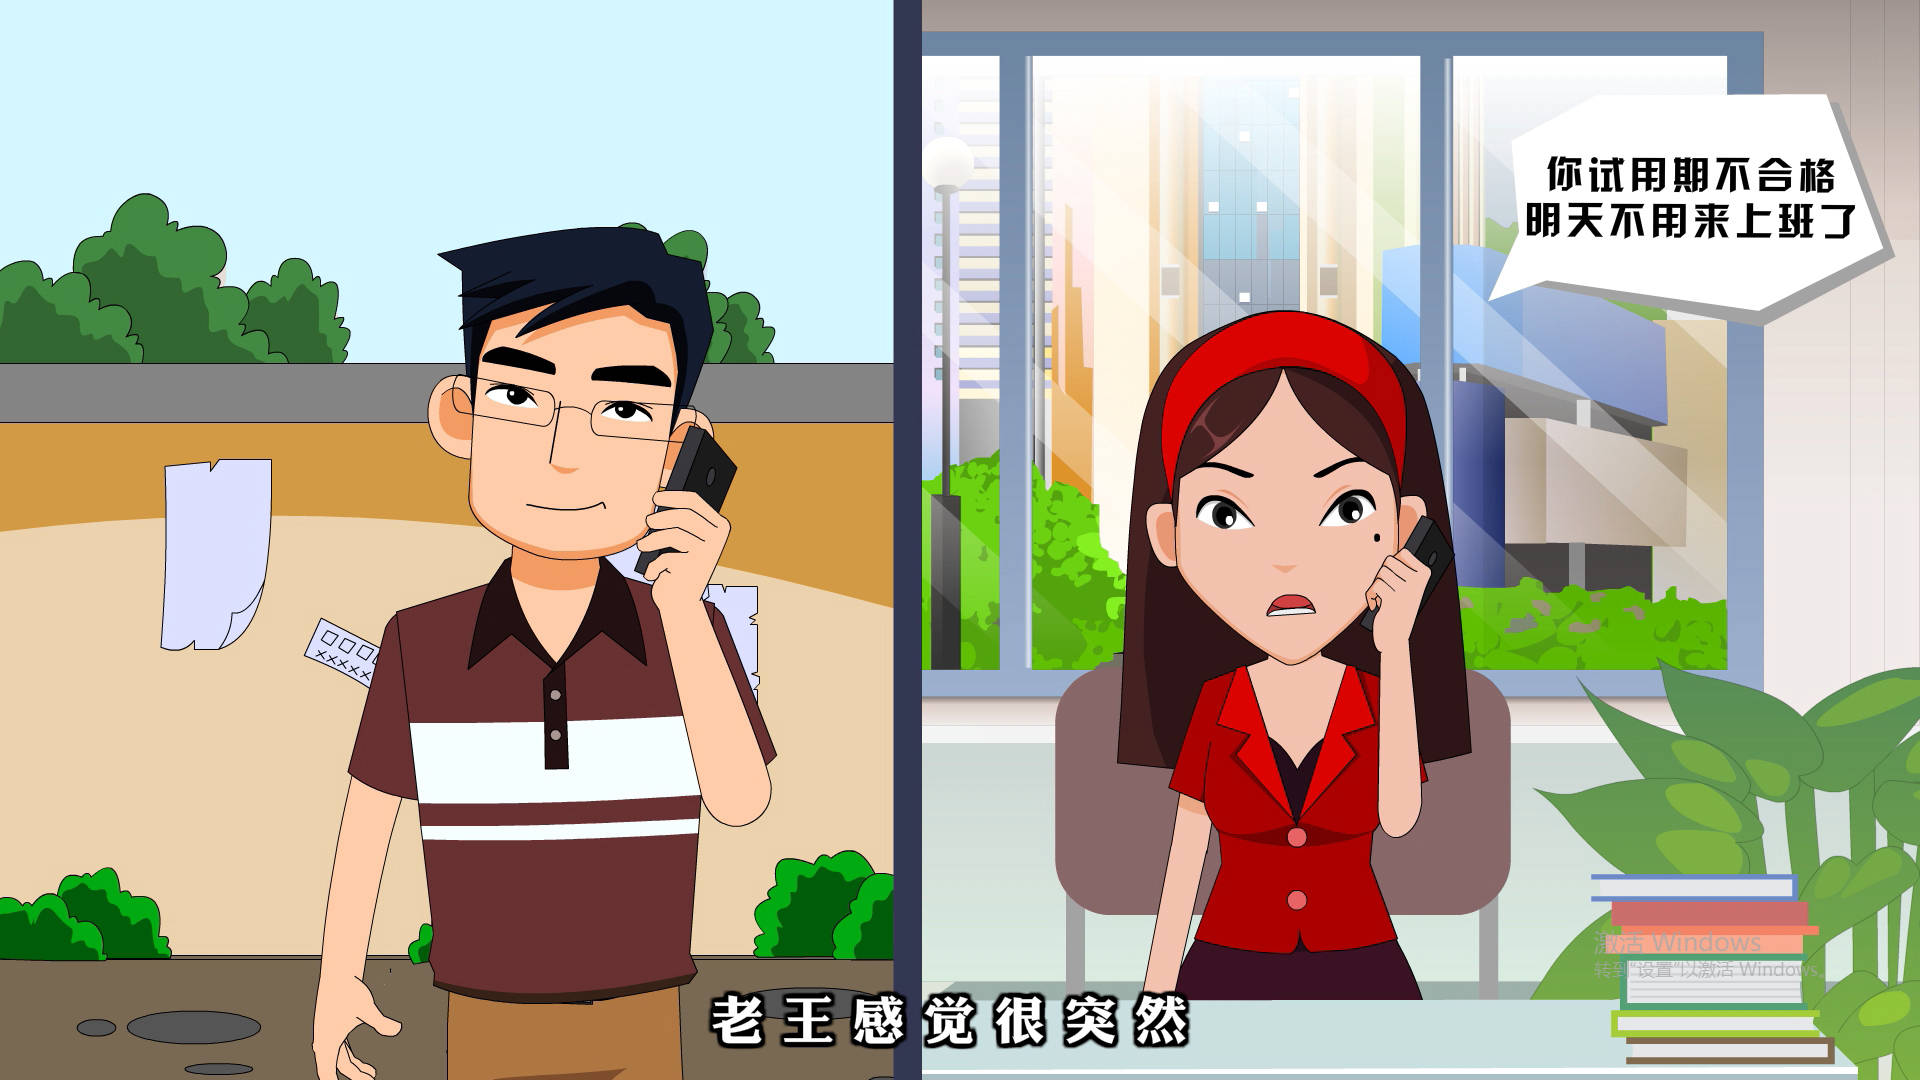 重庆法制类劳动法MG动画宣传视频插图